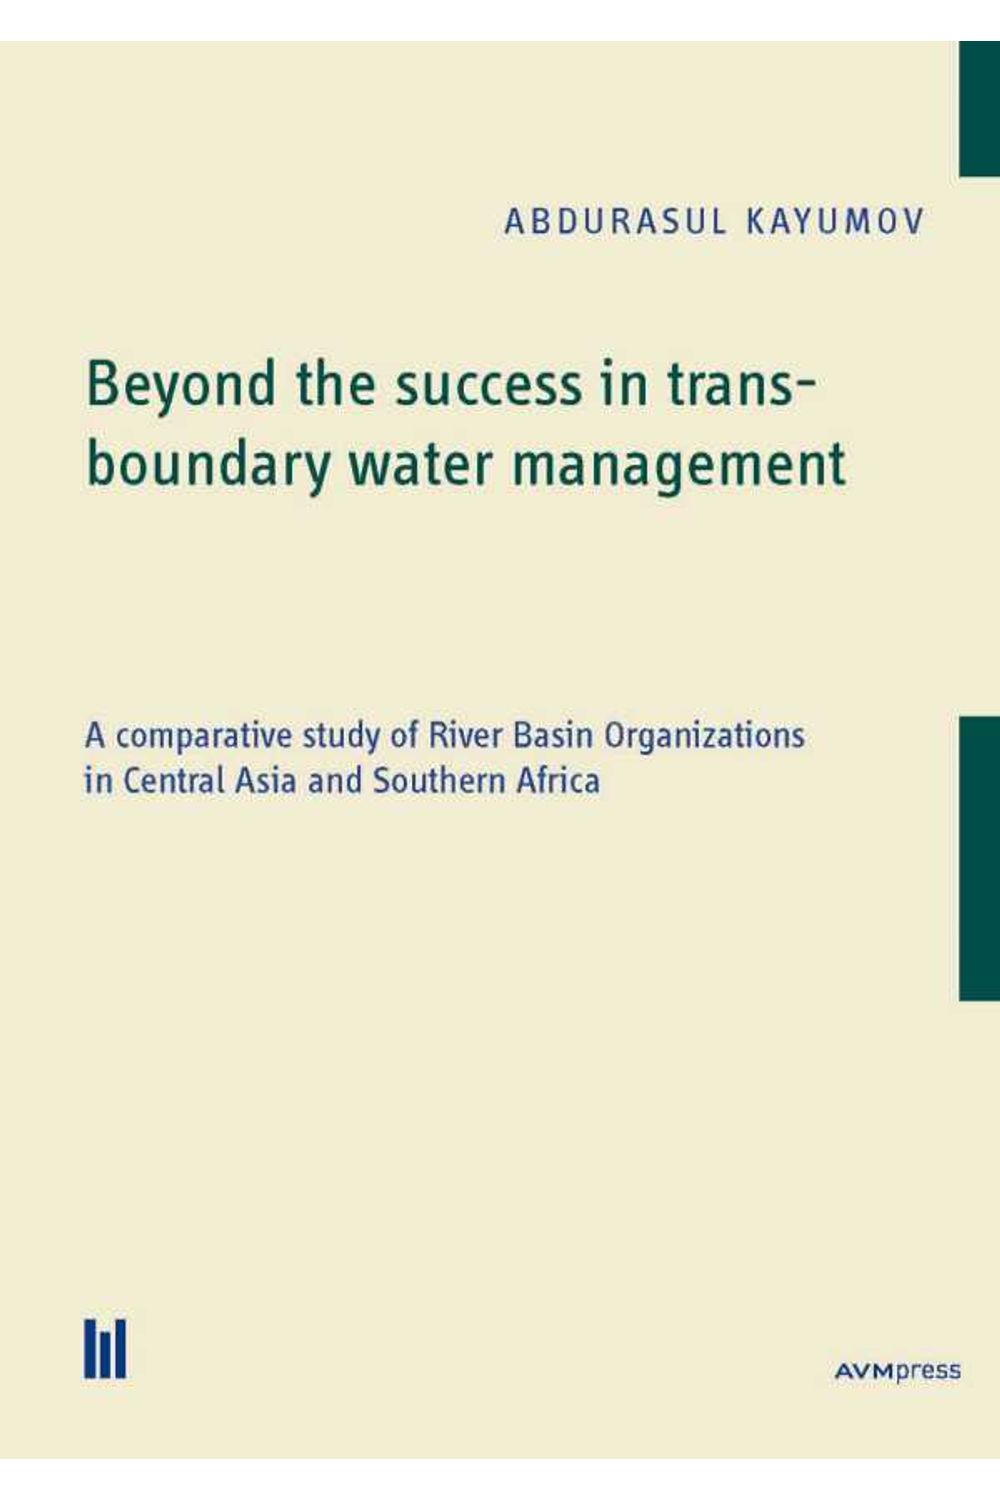 bw-beyond-the-success-in-transboundary-water-management-akademische-verlagsgemeinschaft-mnchen-9783960913740